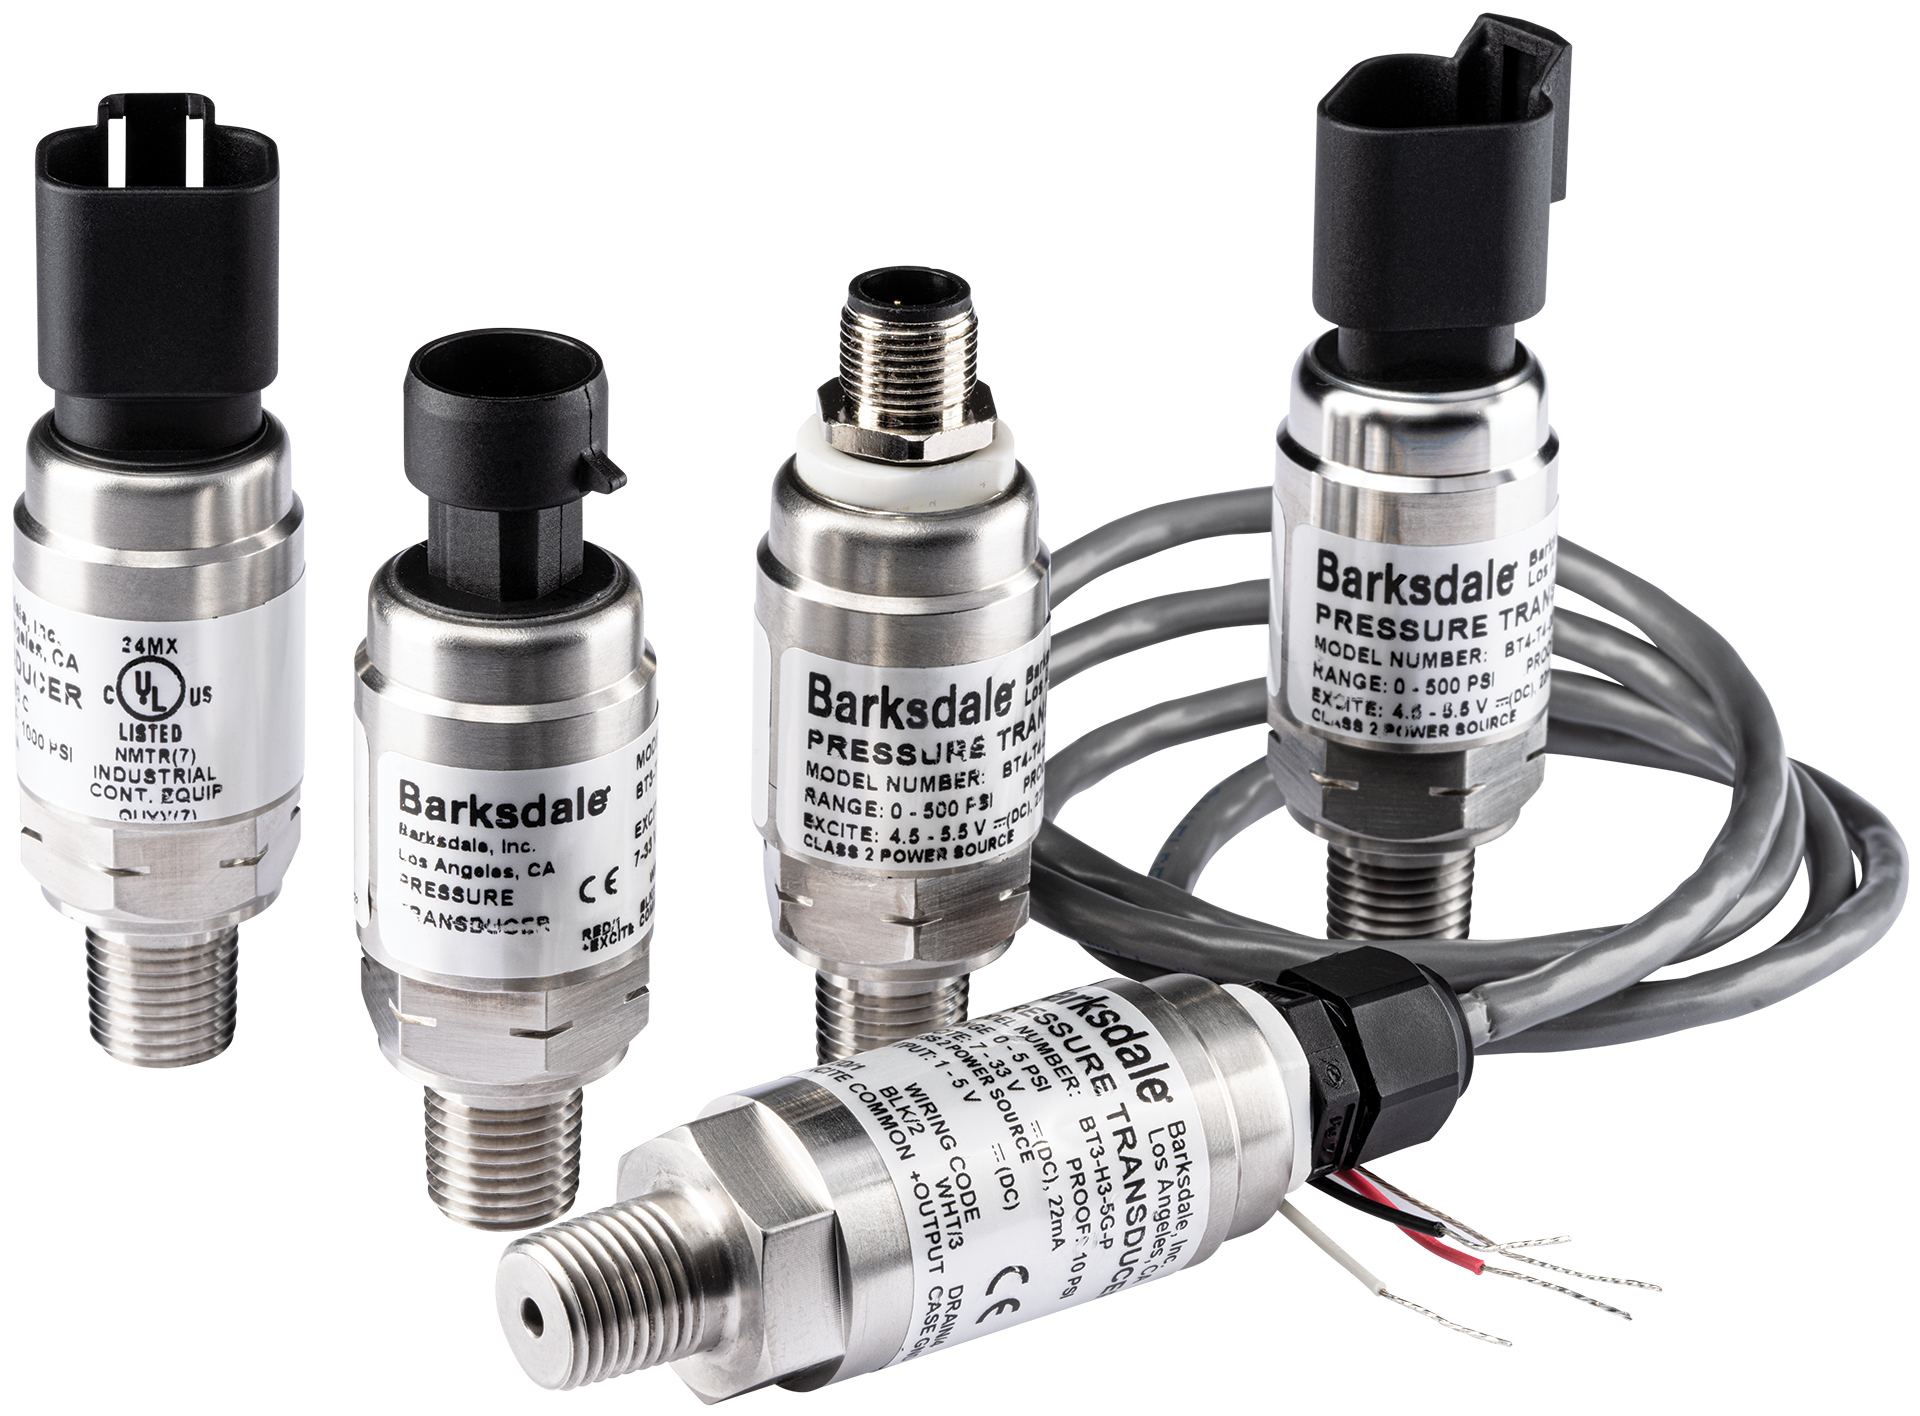 La série de transducteurs BoT de Barksdale améliore la performance et la fiabilité des systèmes